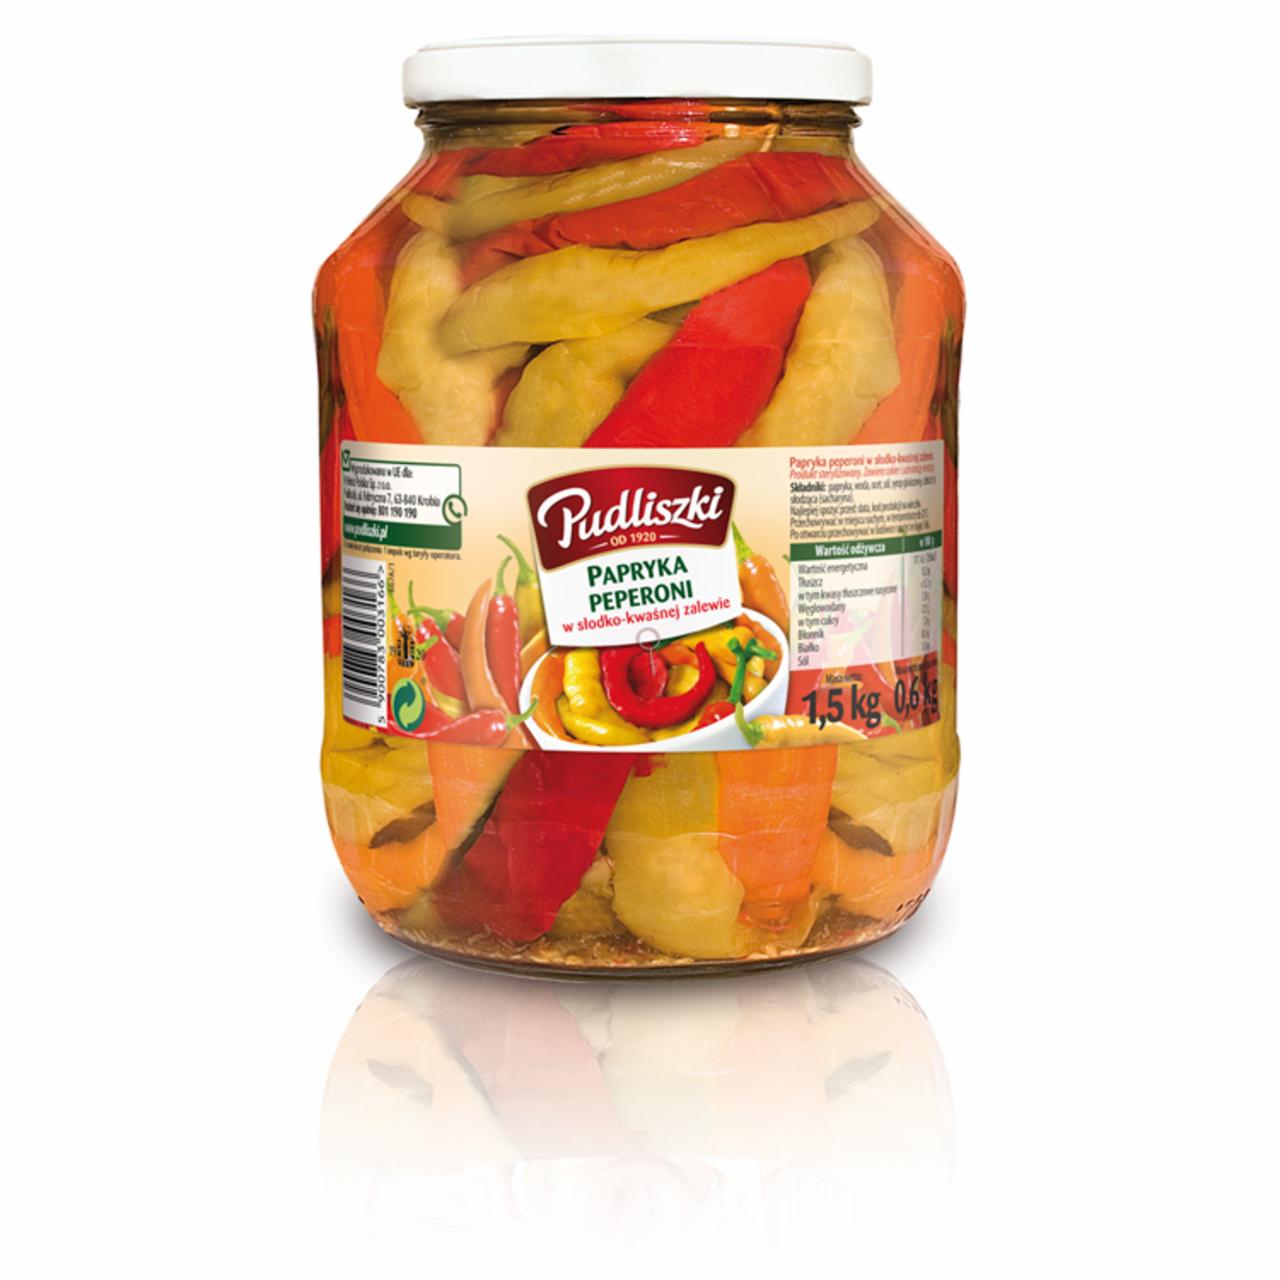 Zdjęcia - Pudliszki Papryka peperoni w słodko-kwaśnej zalewie 1,5 kg